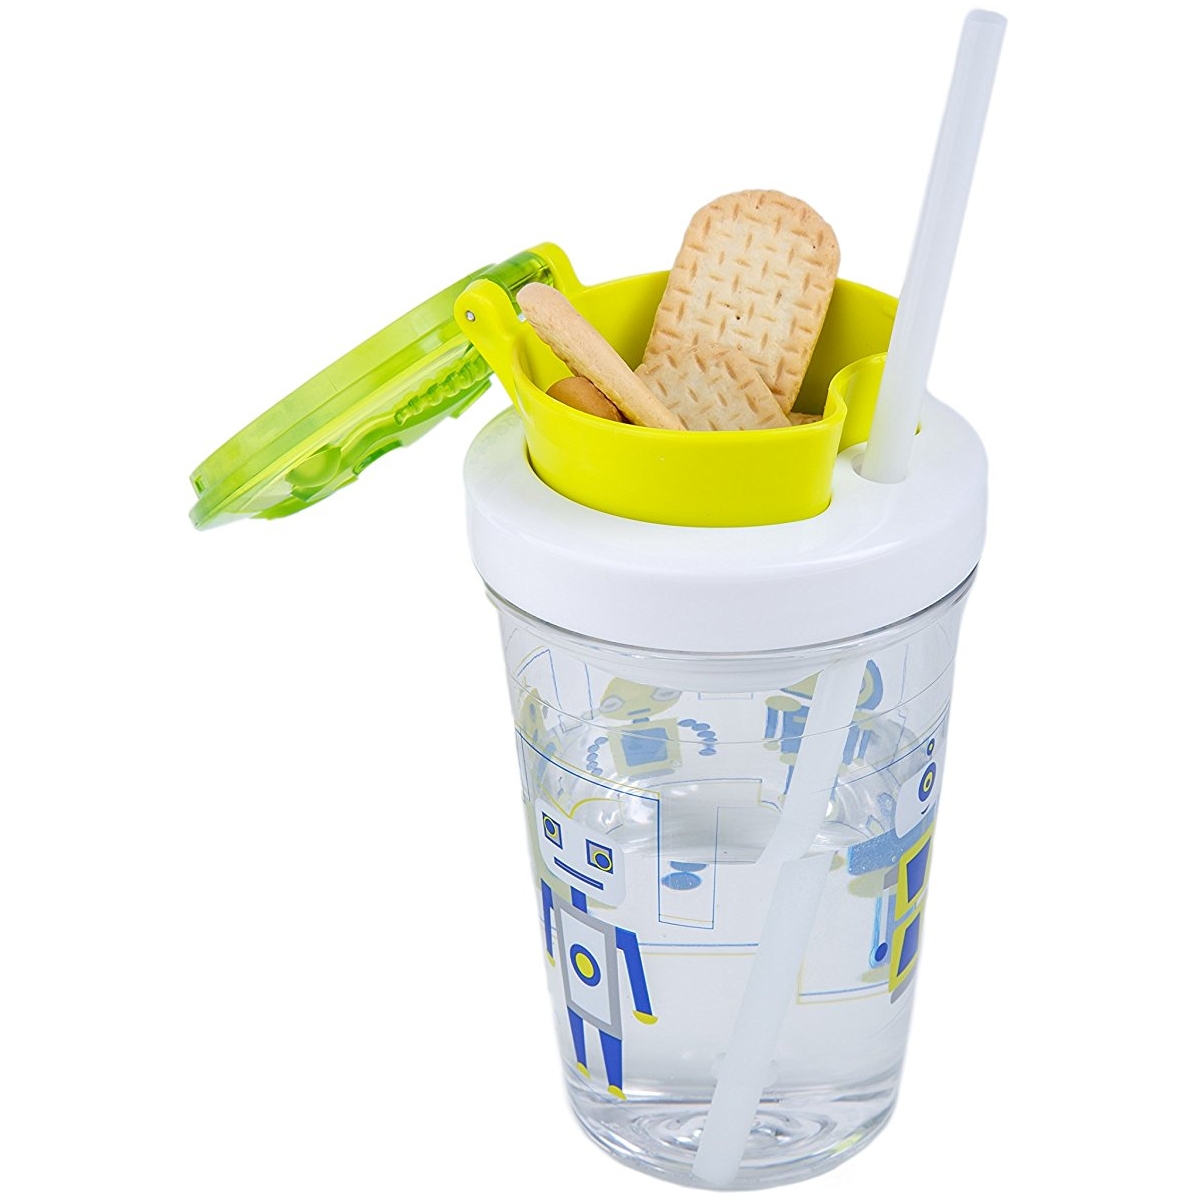 Детский стакан с соломинкой Snack tumbler Robot green, 0.35 л (Contigo CONTIGO0628)